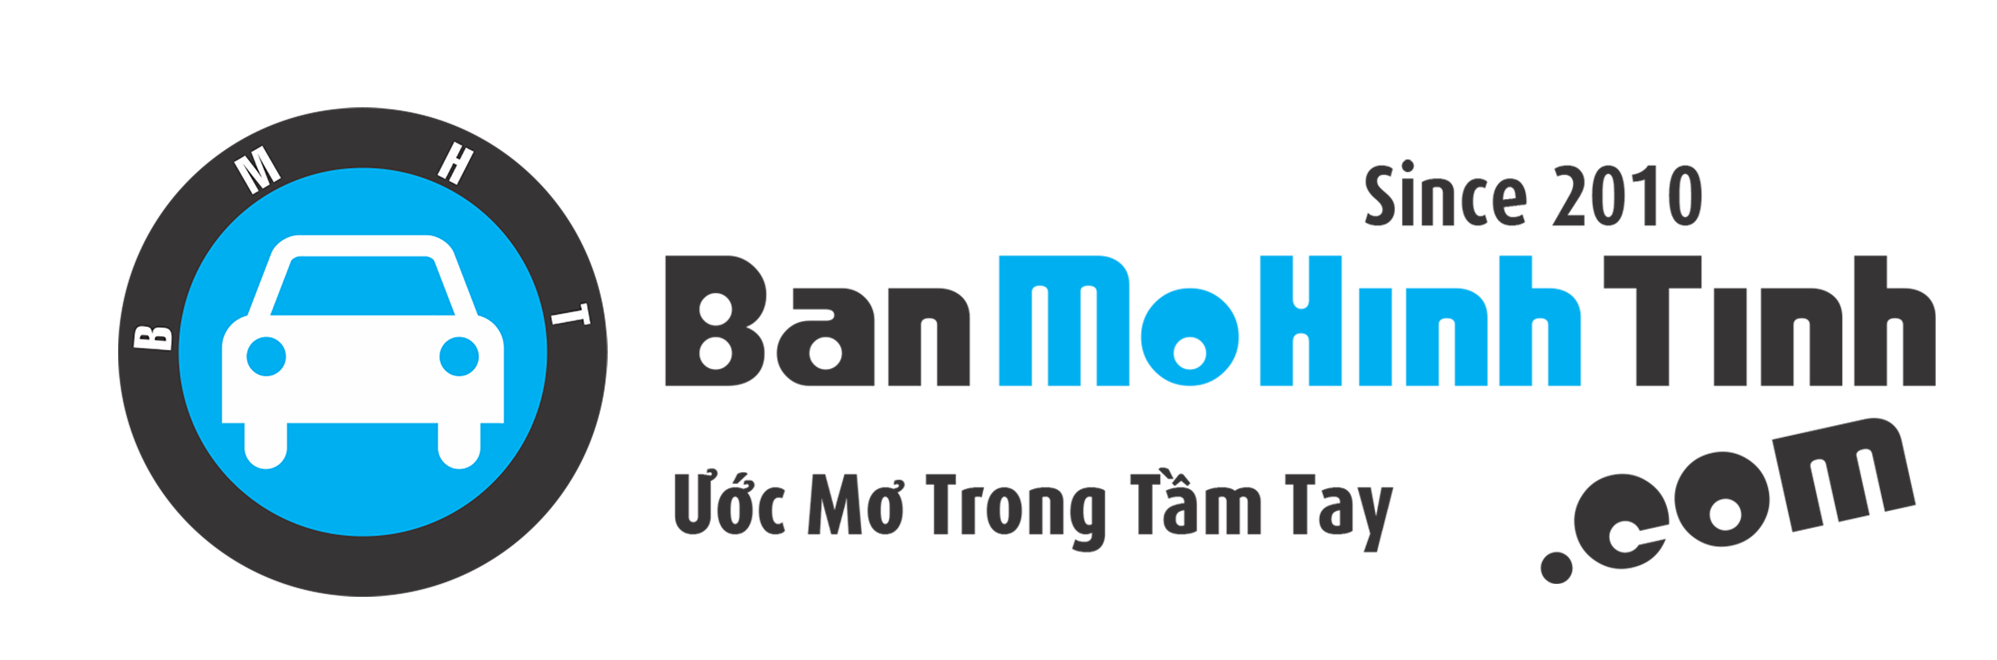 Cửa hàng Bán Mô Hình Tĩnh (BMHT) – banmohinhtinh.com